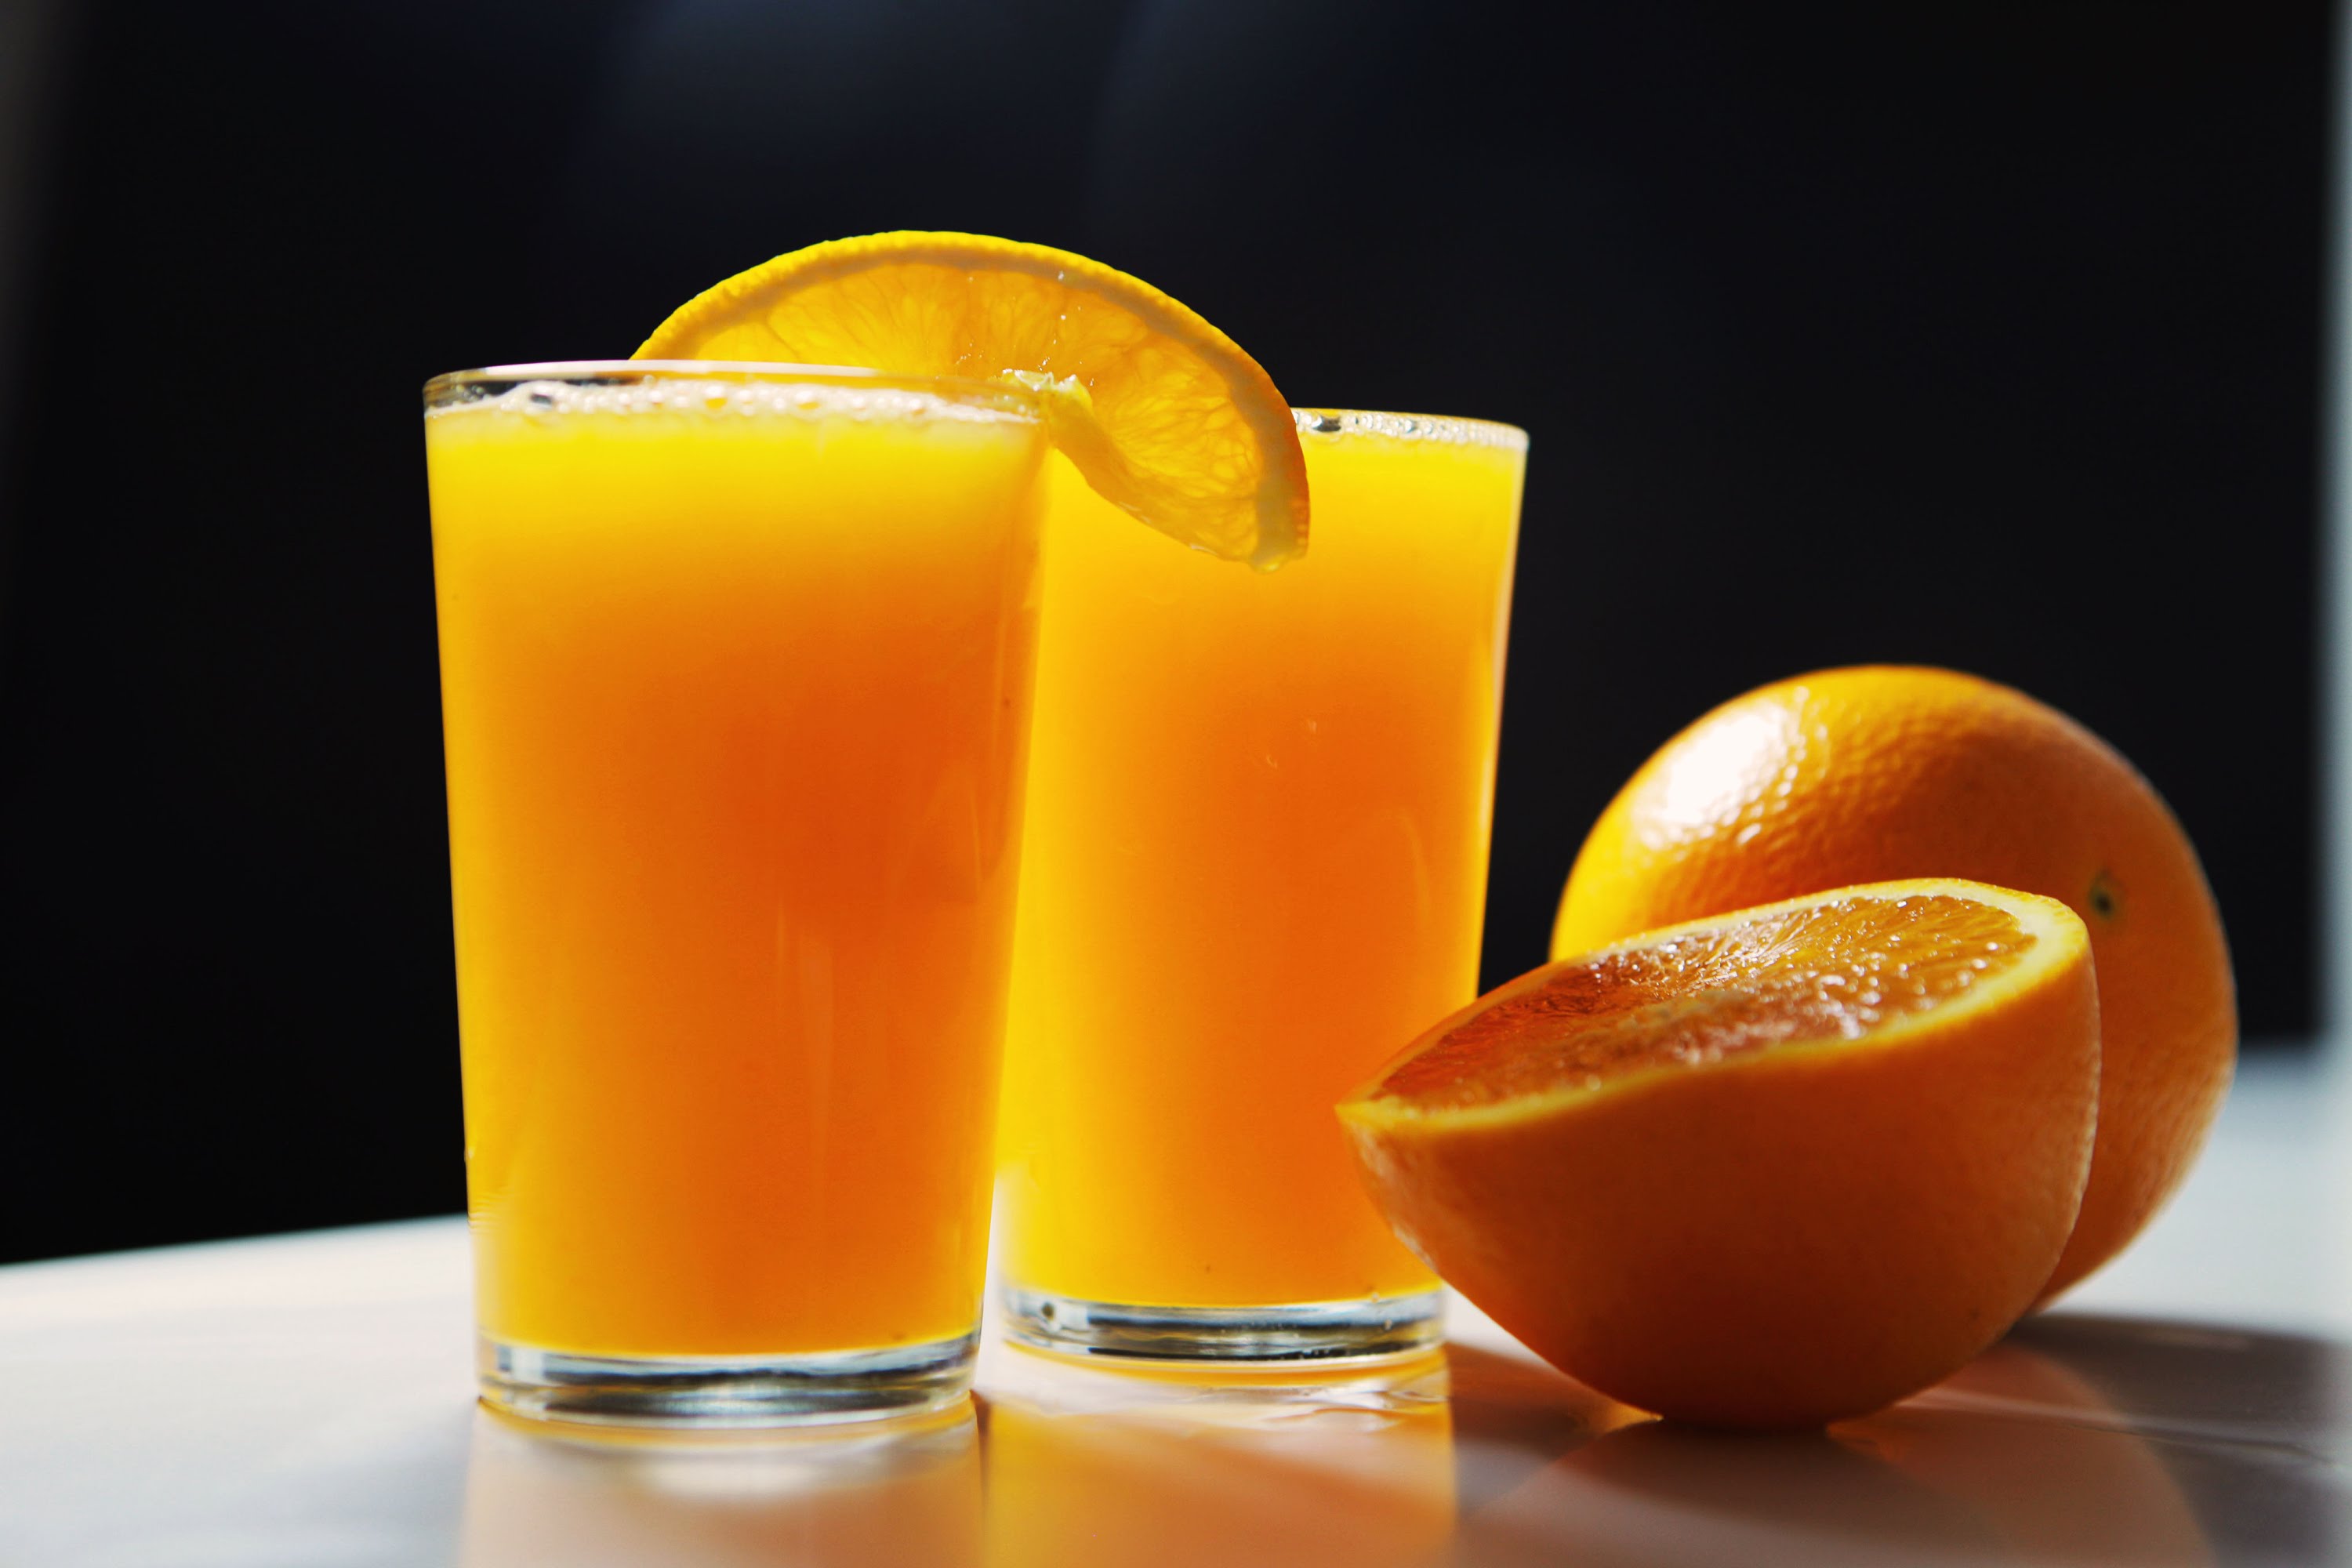 How to make fresh orange juice - YouTube